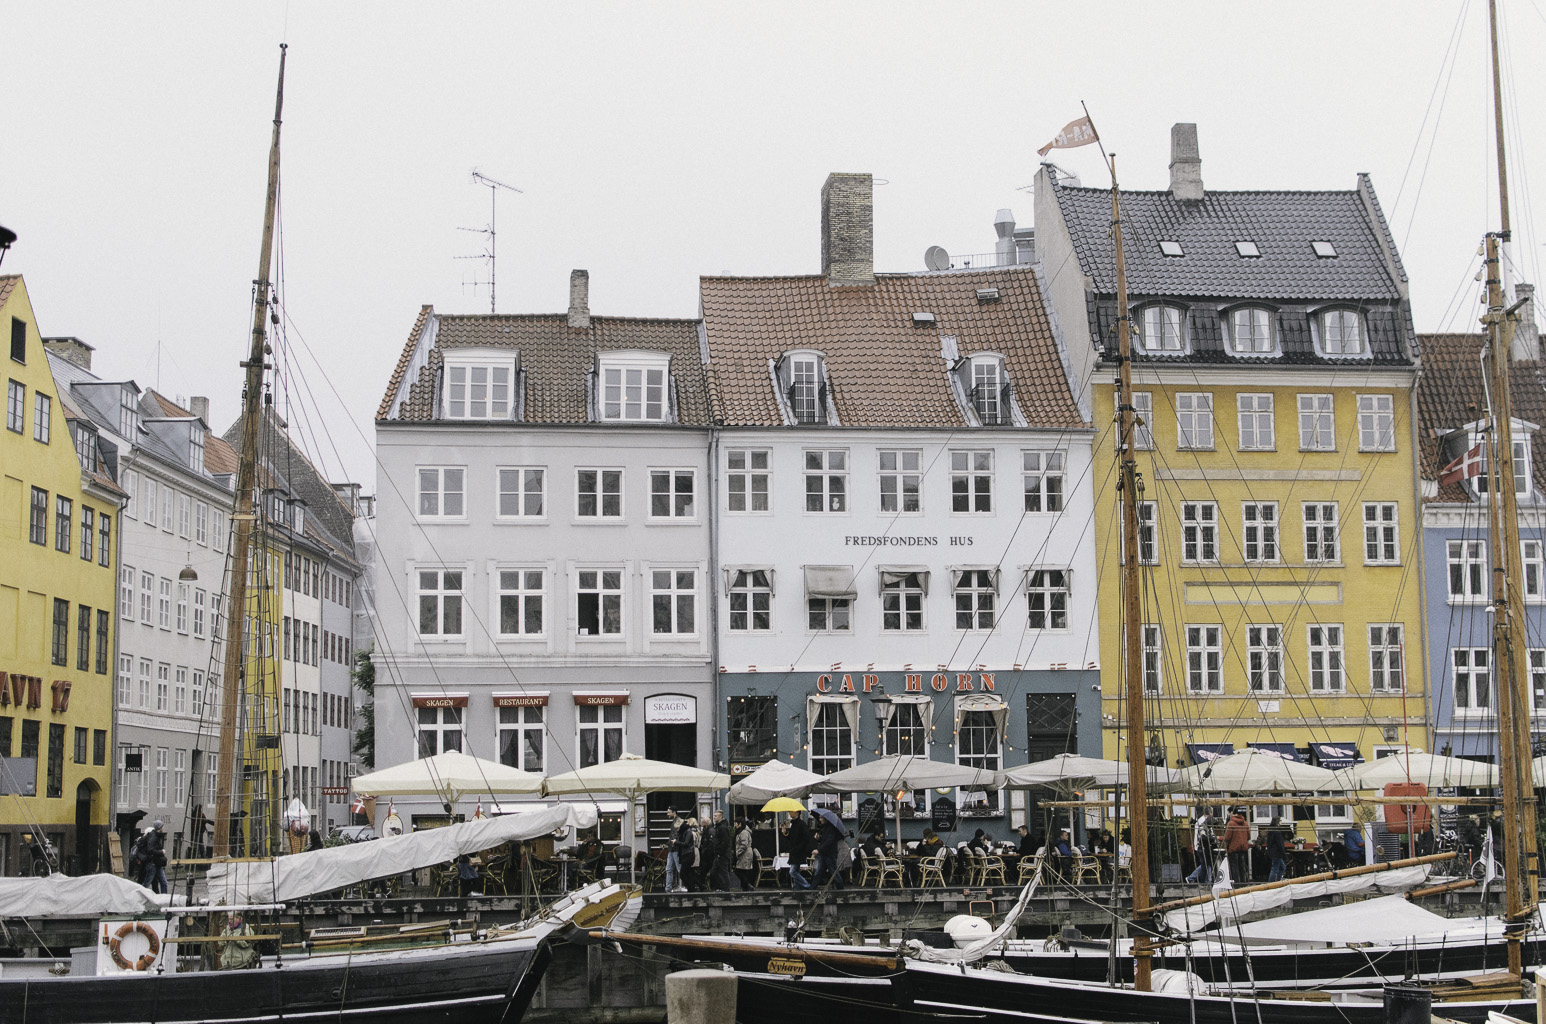 Boats in the Nyhavn of Copenhagen